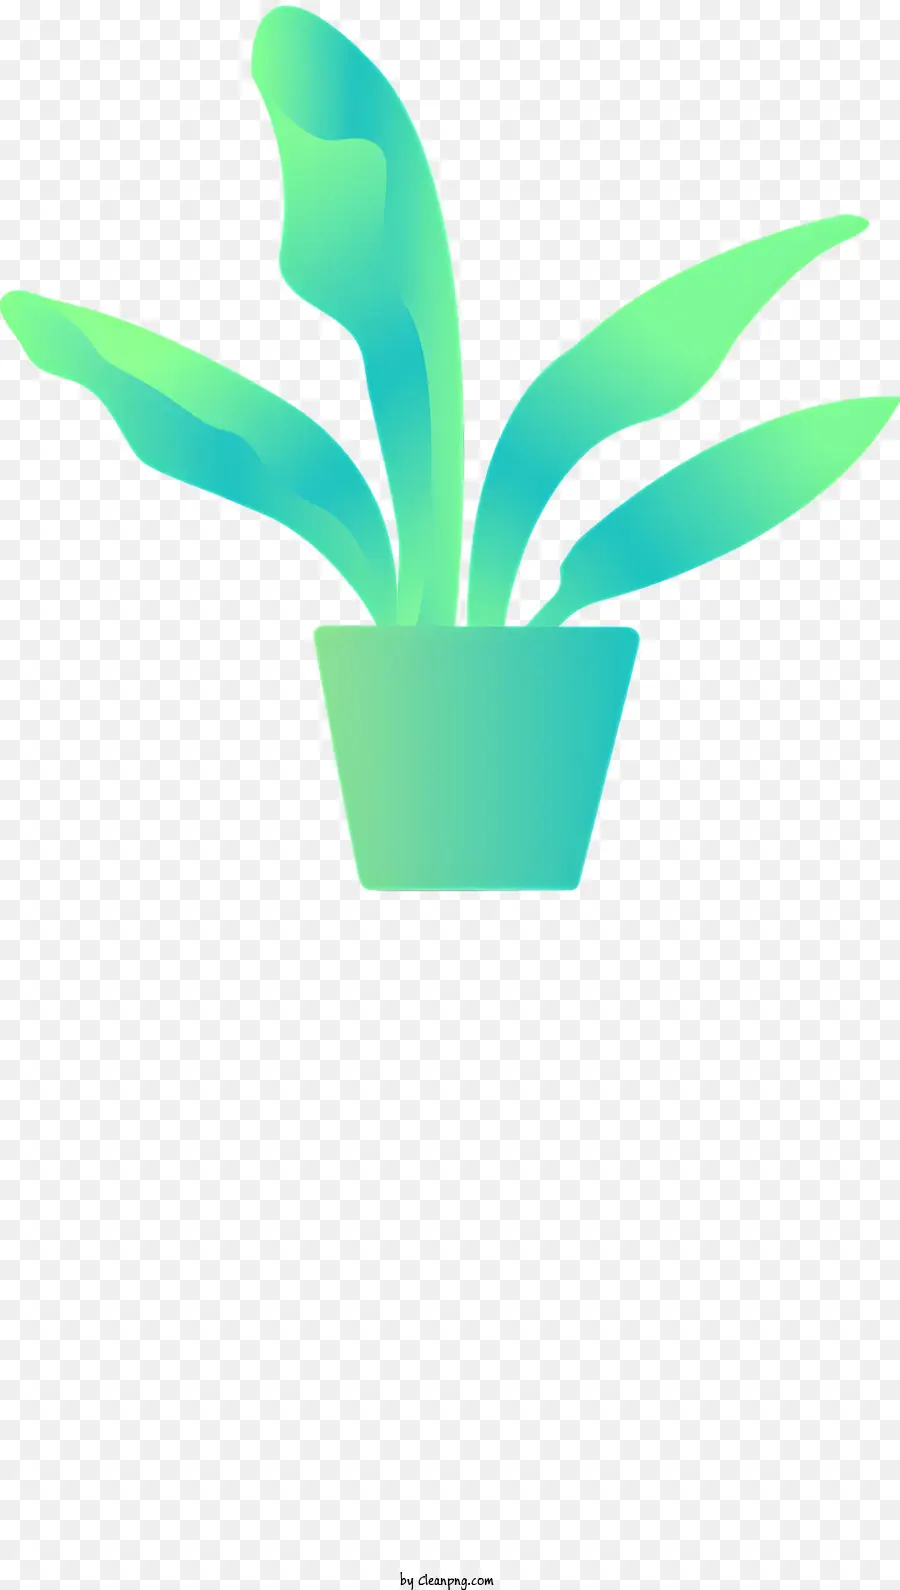 Topfpflanze Silhouette schwarze Hintergrundblätter Stiele - Silhouette aus grünem Topfpflanze auf schwarzem Hintergrund